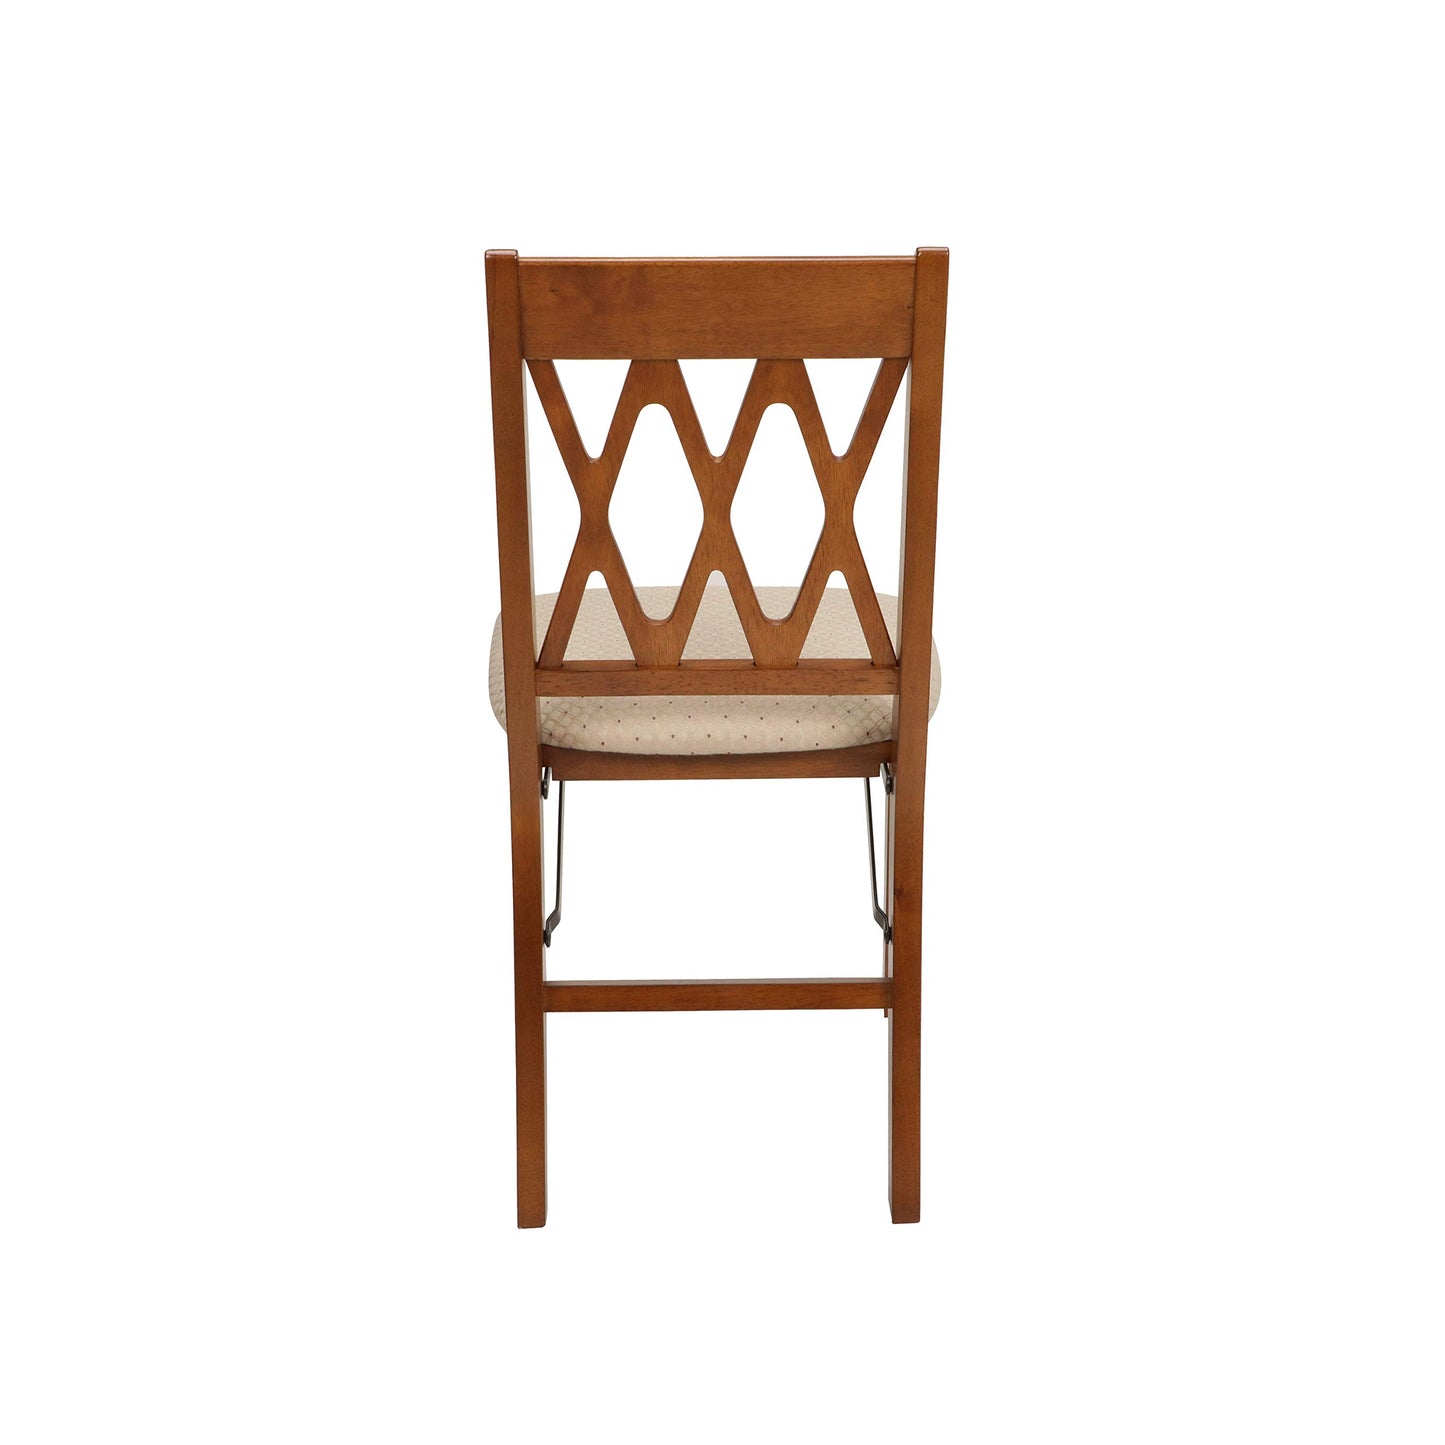 Stakmore Lattice Back Folding Chair Finish, Set of 2, Fruitwood